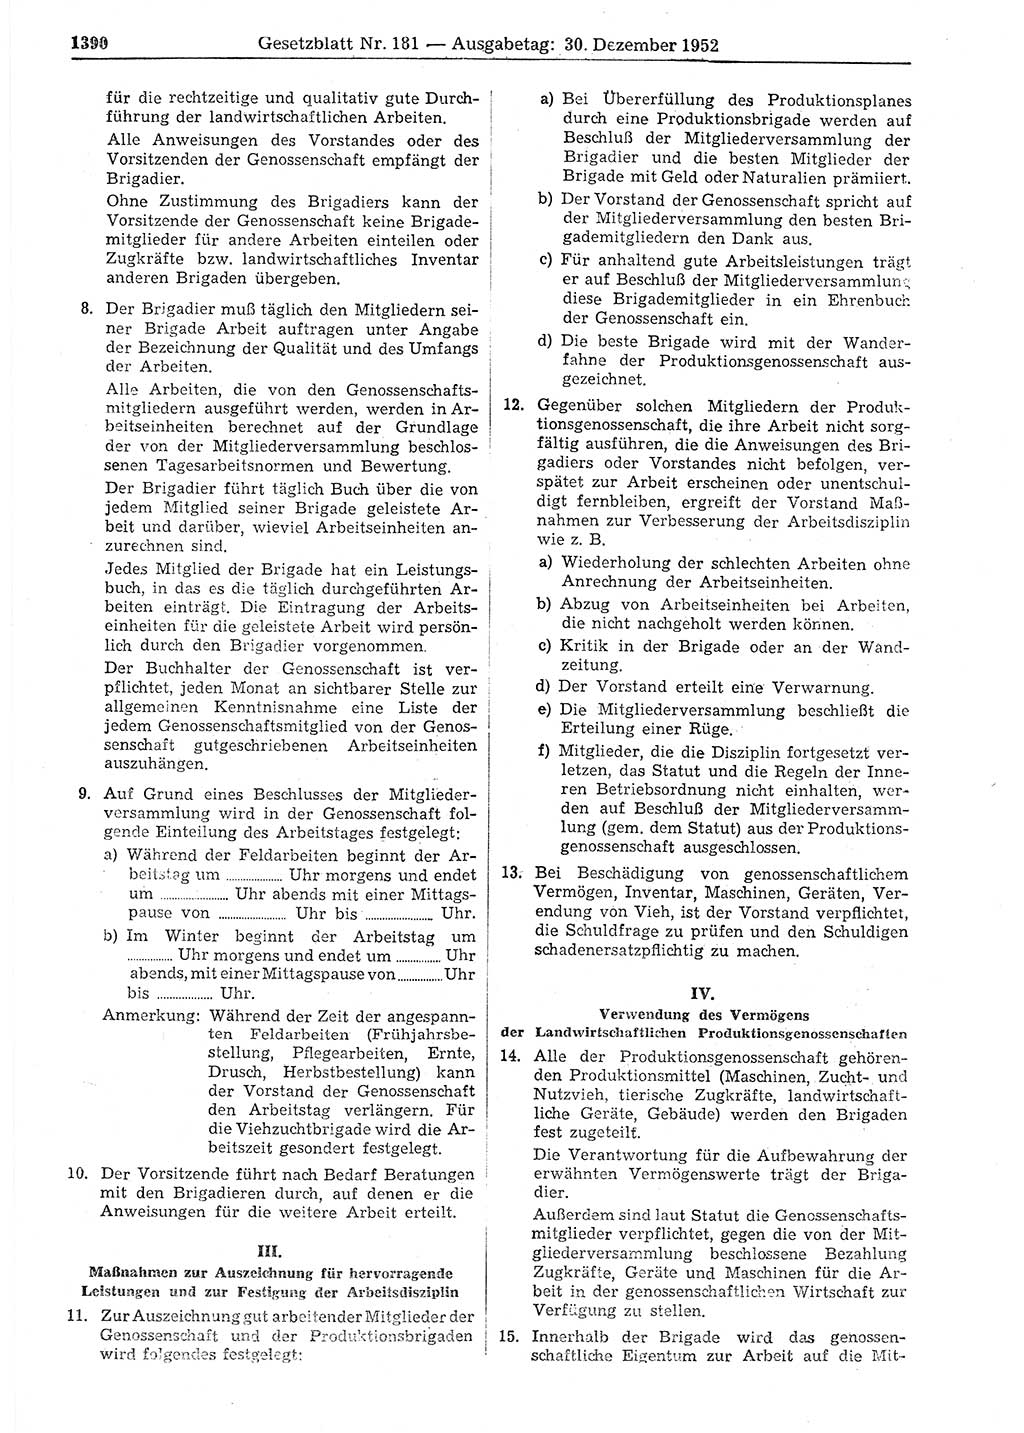 Gesetzblatt (GBl.) der Deutschen Demokratischen Republik (DDR) 1952, Seite 1390 (GBl. DDR 1952, S. 1390)